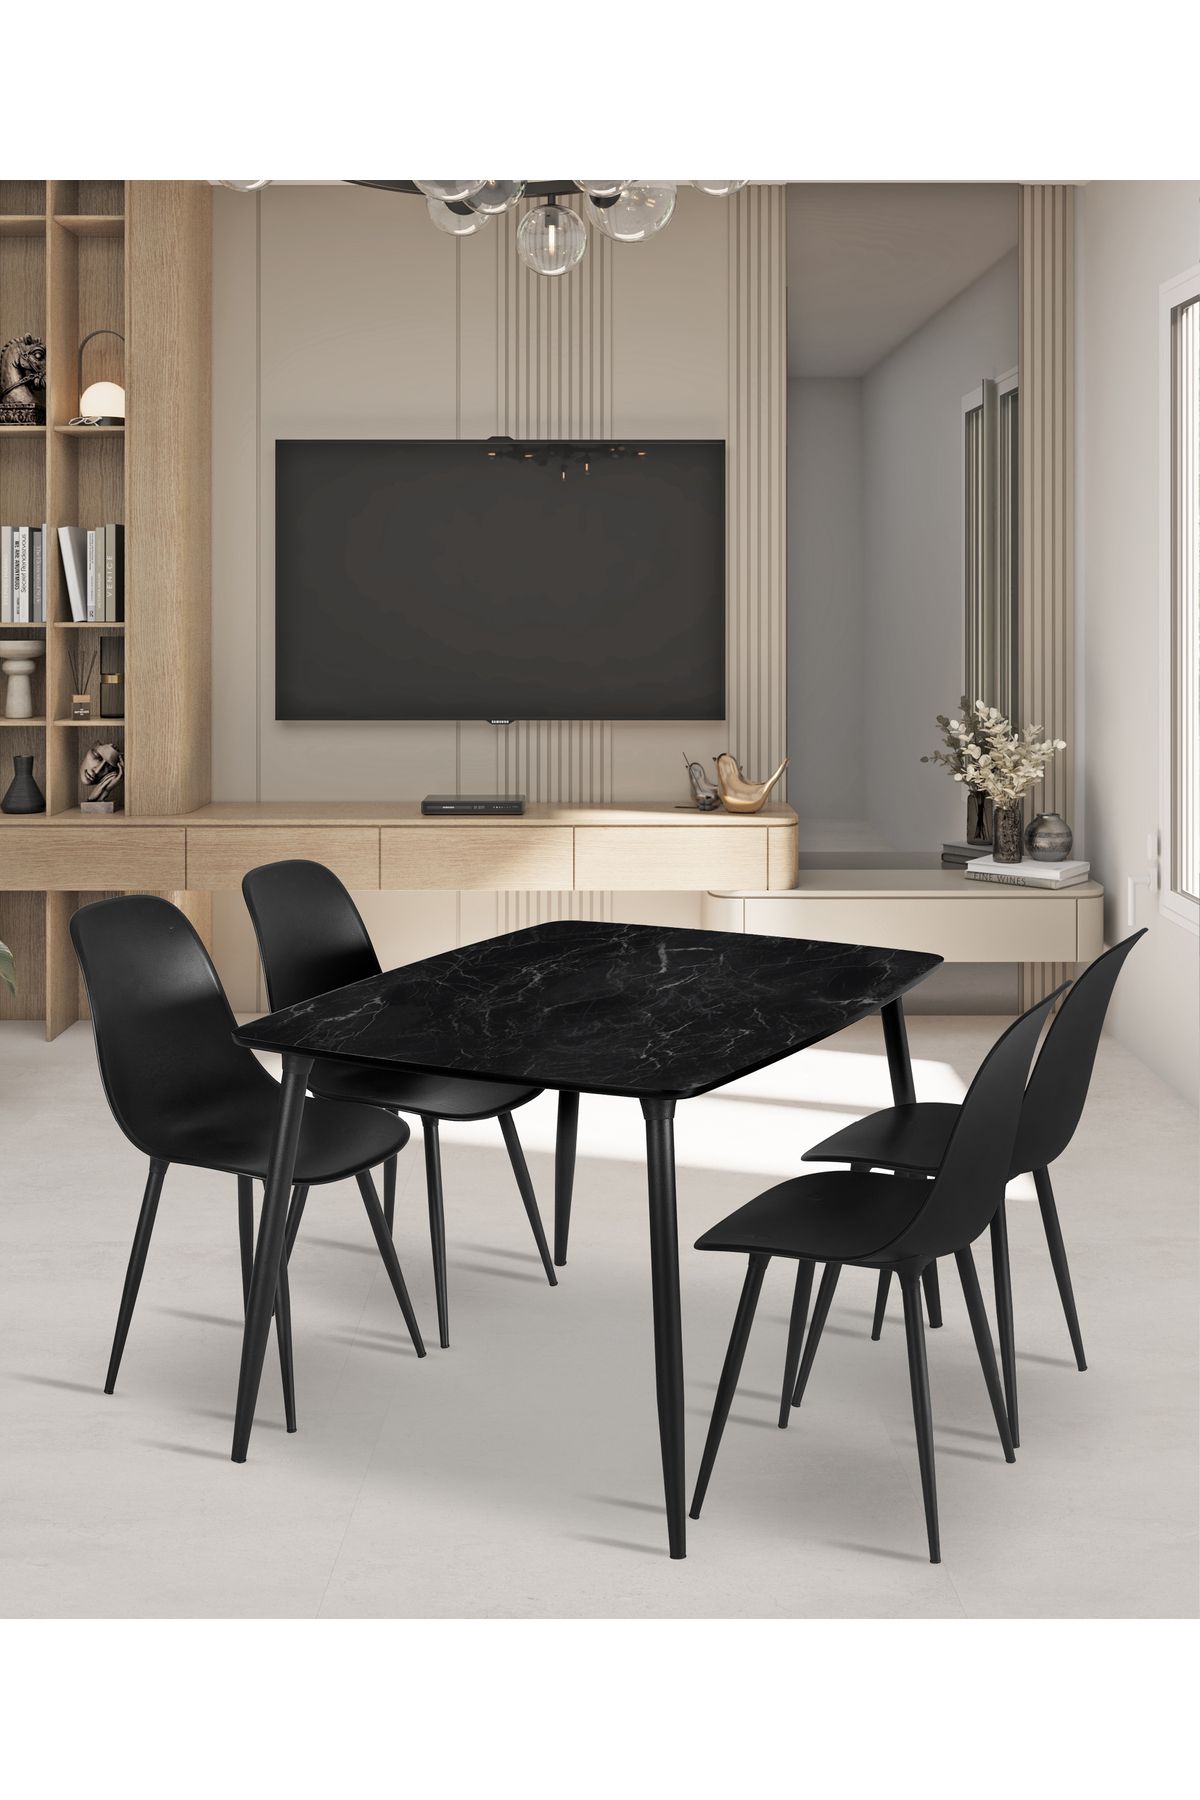 Estelia Yemek Masası Mutfak Masası 90x120 Cm Metal Ayaklı Siyah Masa, 4 Adet Abant Metal Ayaklı Sandalye